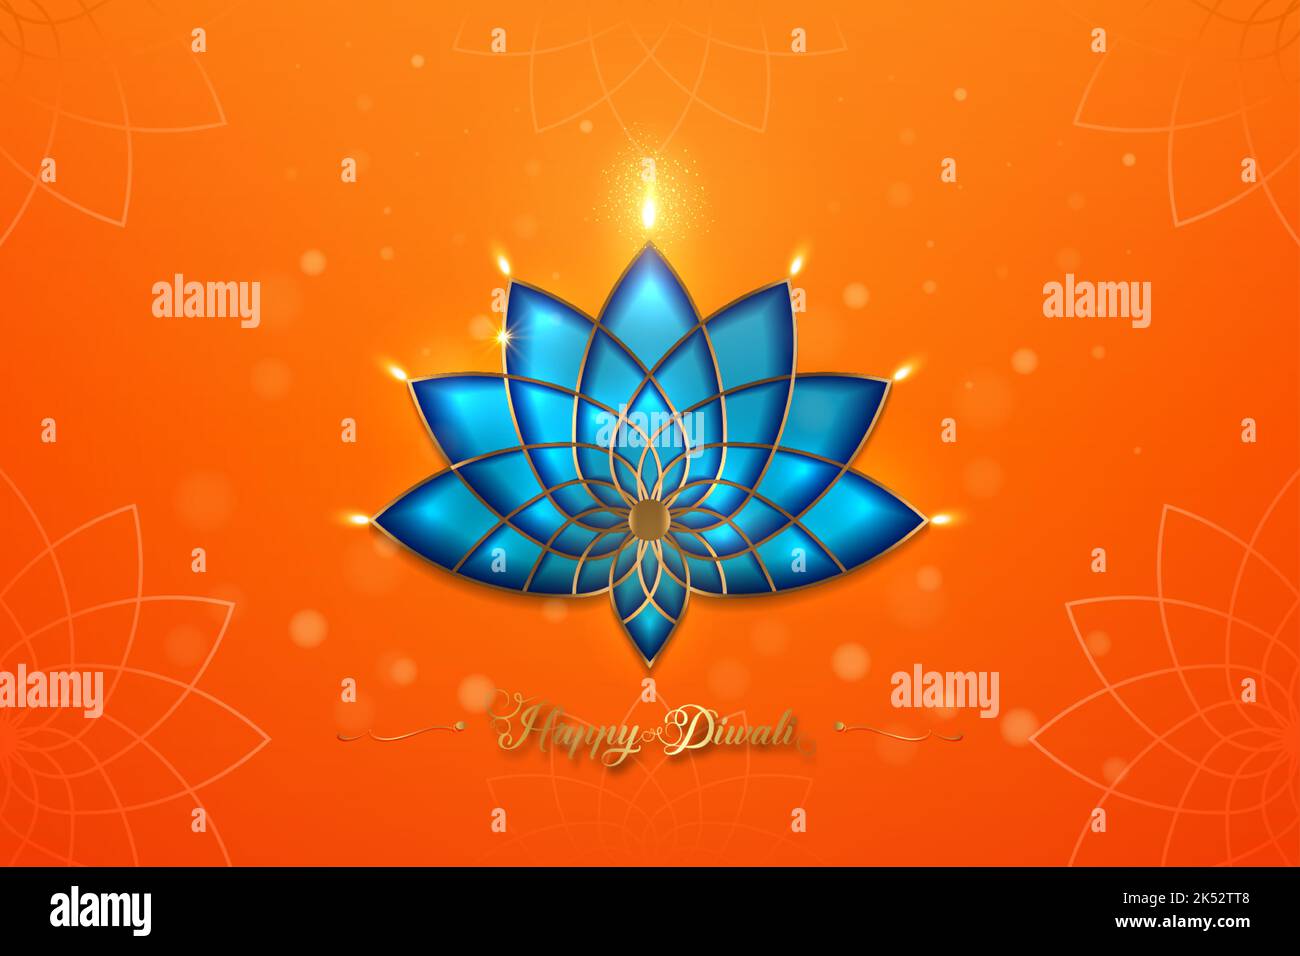 Happy Diwali Festival of Lights India Celebration modèle orange. Bannière graphique des lampes à huile Indian Lotus Diya, design moderne couleurs vives Illustration de Vecteur